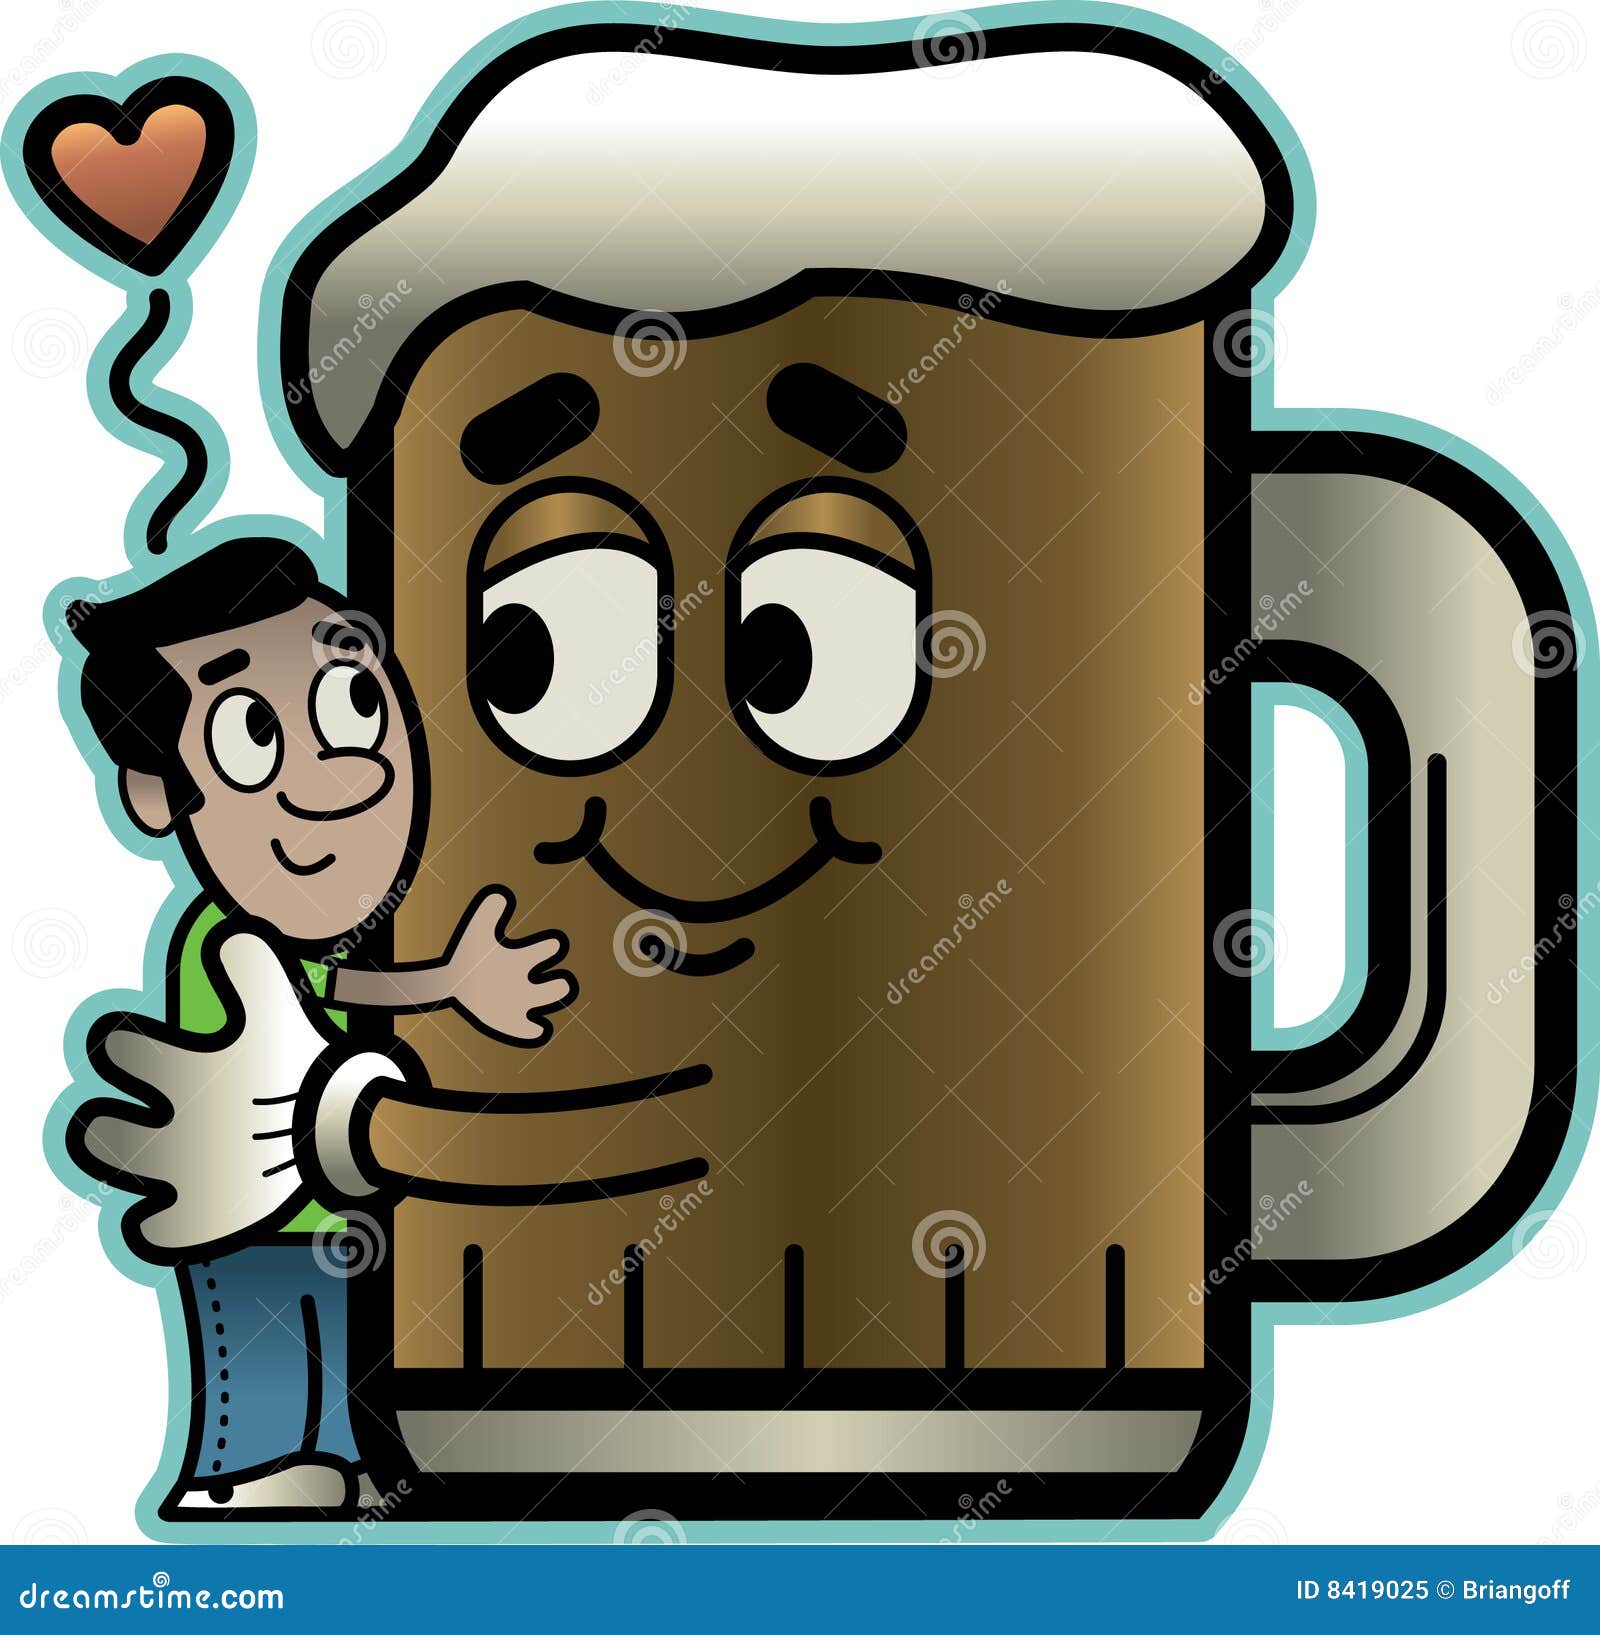 man-hugs-beer-8419025.jpg